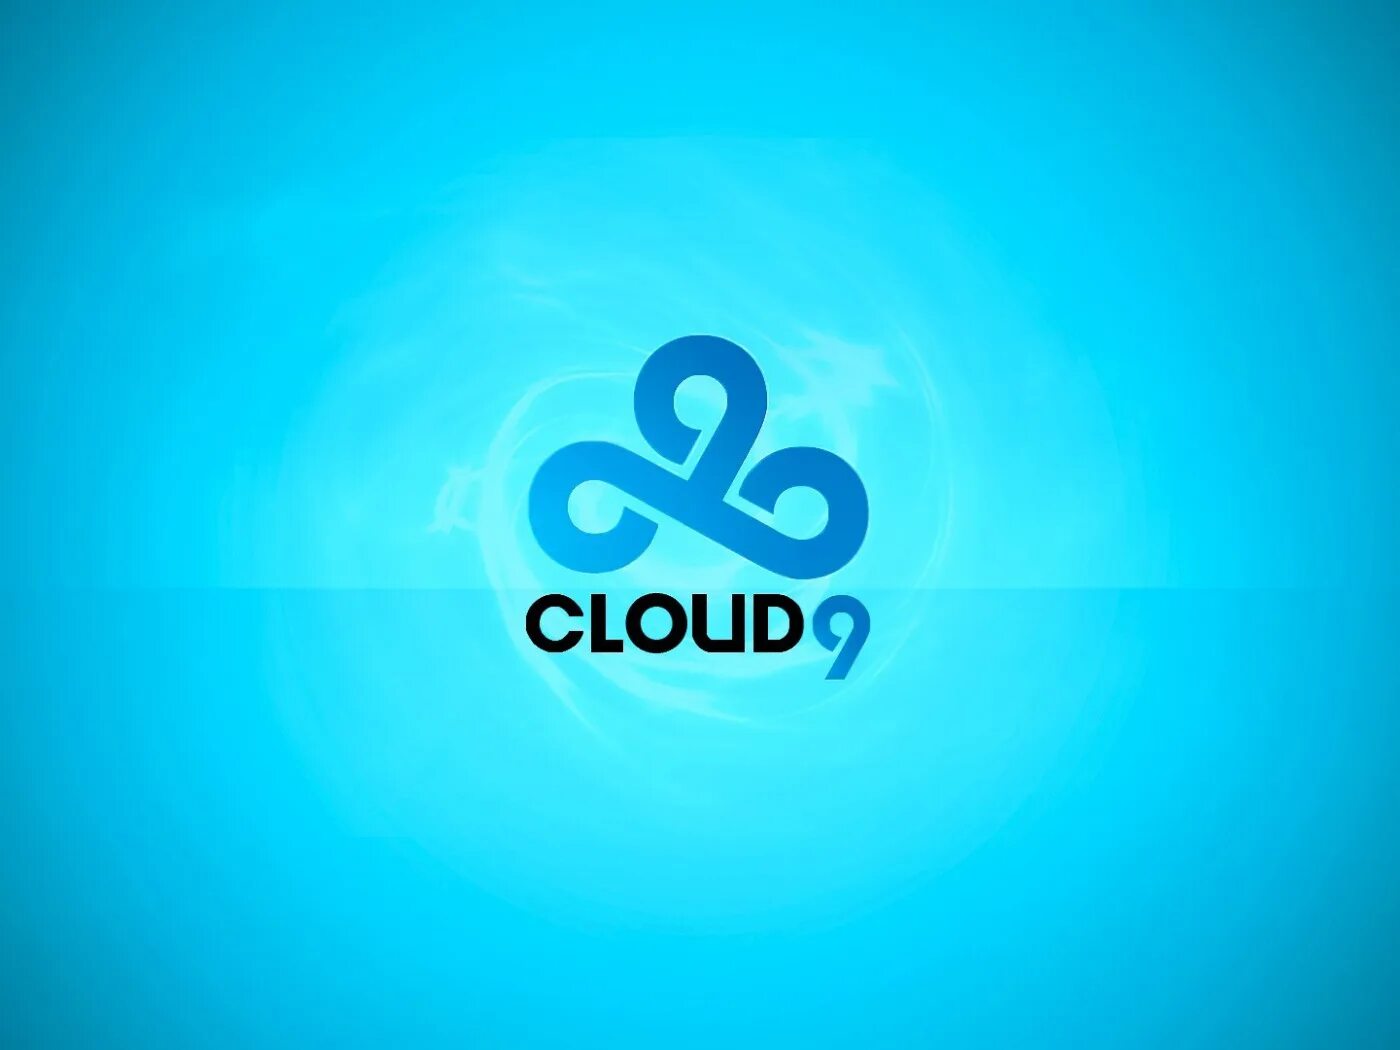 Клауд 9 КС го ава. Cloud9 Team. Команда клоуд9. Логотип cloud9.